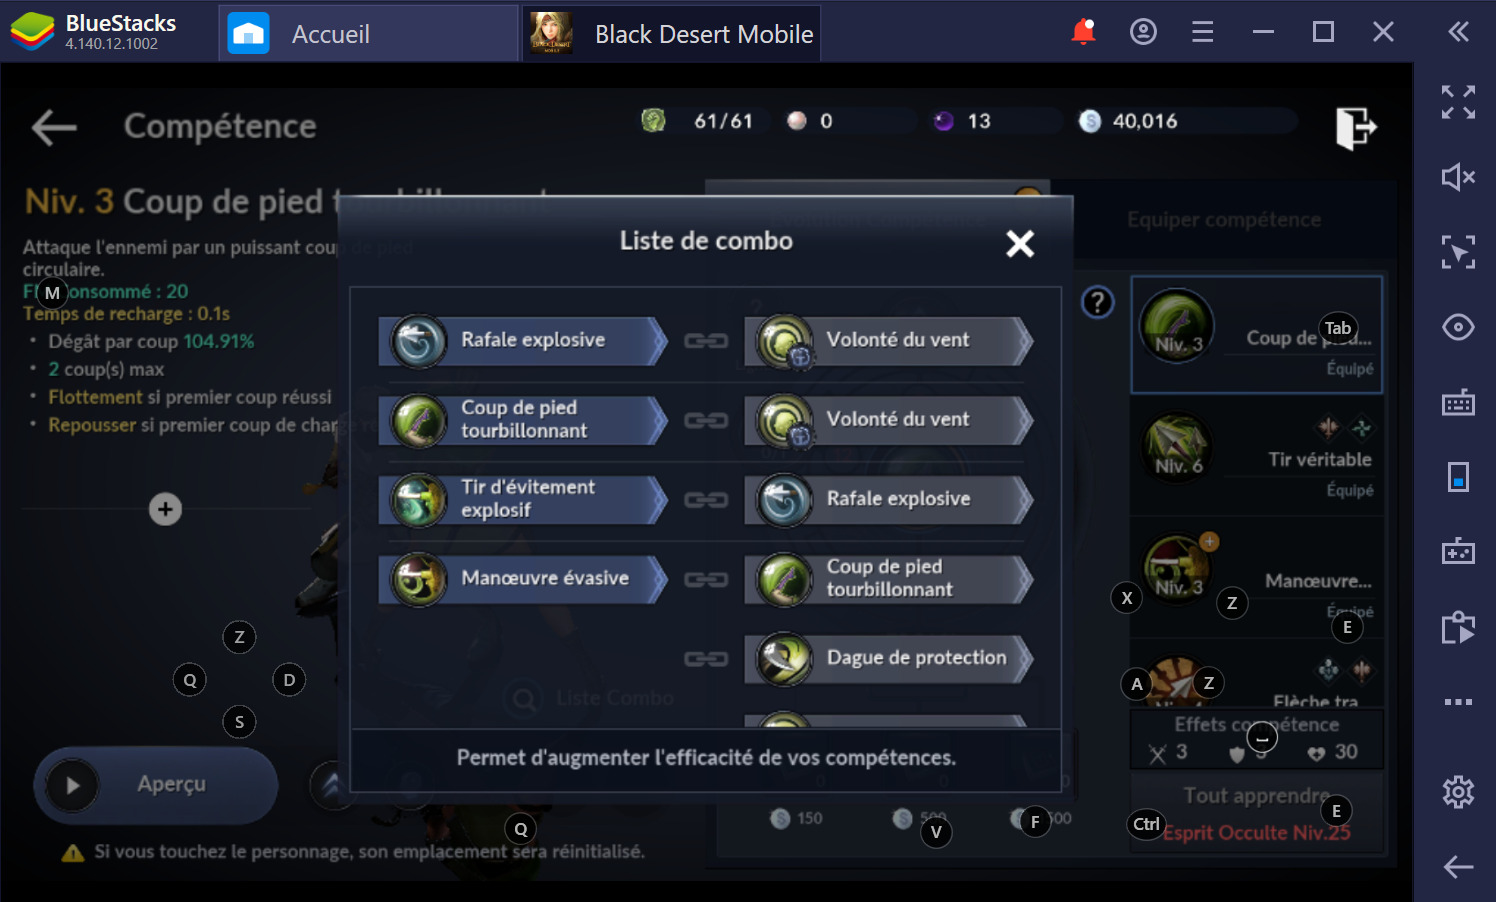 Guide BlueStacks pour Black Desert Mobile – Comment révéler tout le potentiel de ce MMORPG